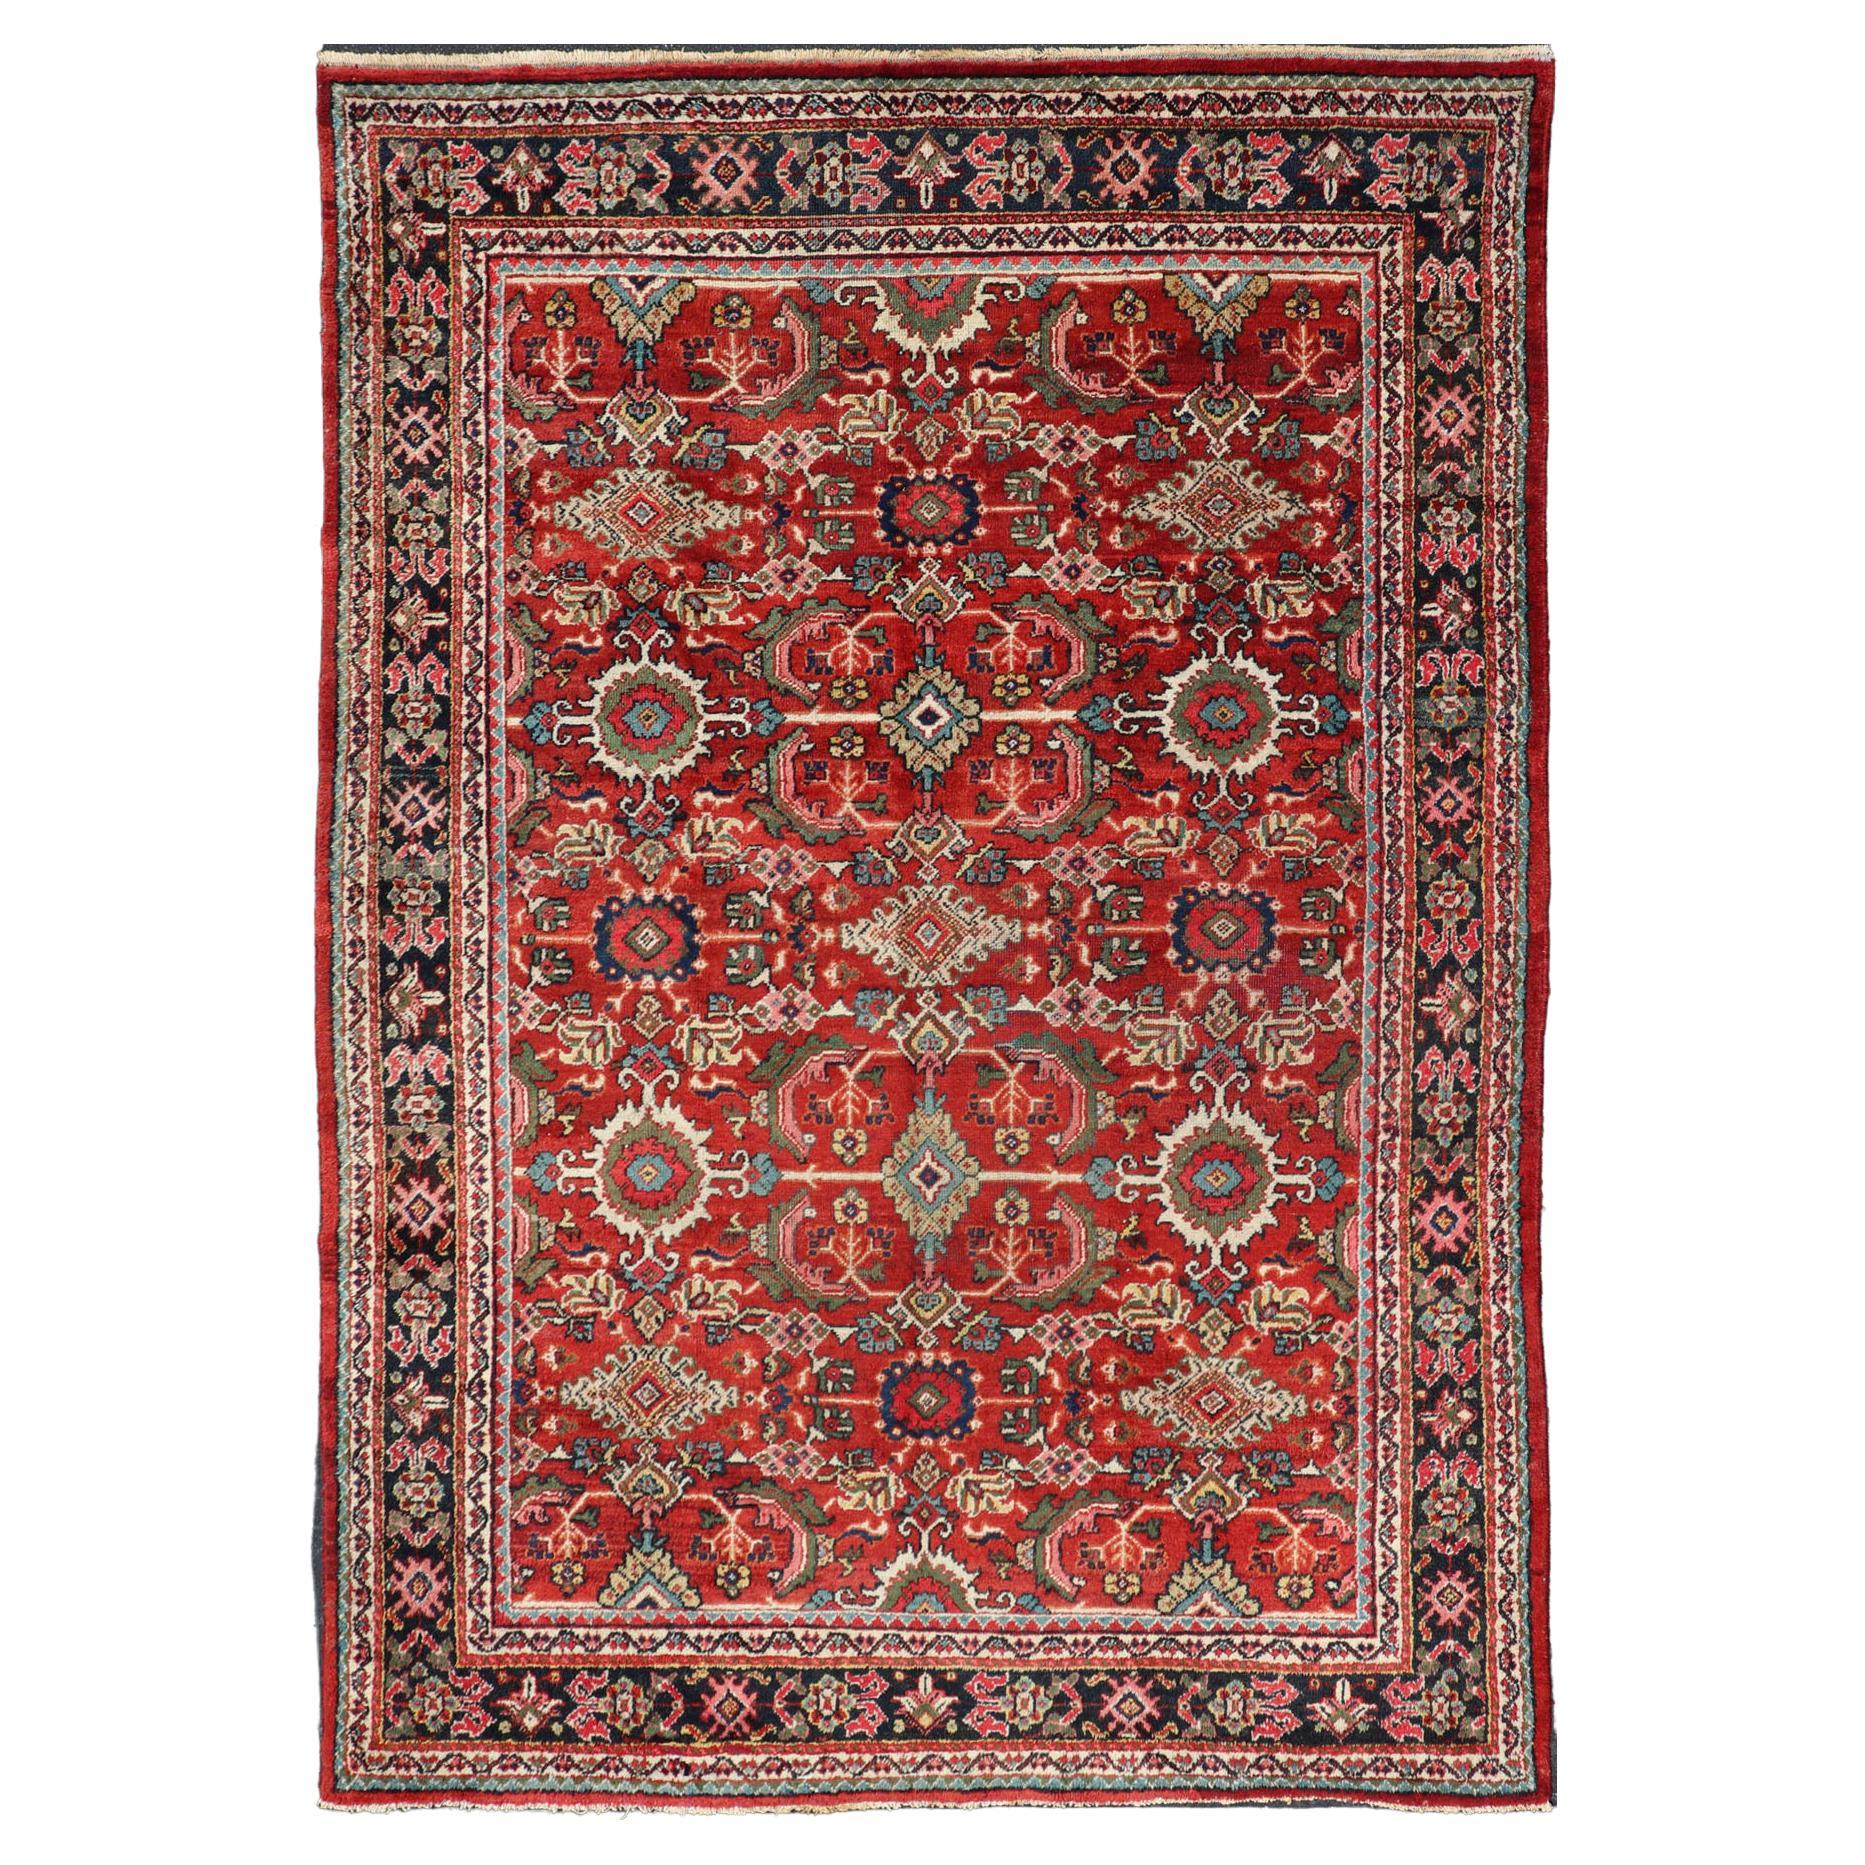 Antiker persischer Mahal-Teppich mit überdimensionalem, subgeometrischem Design auf rotem Hintergrund